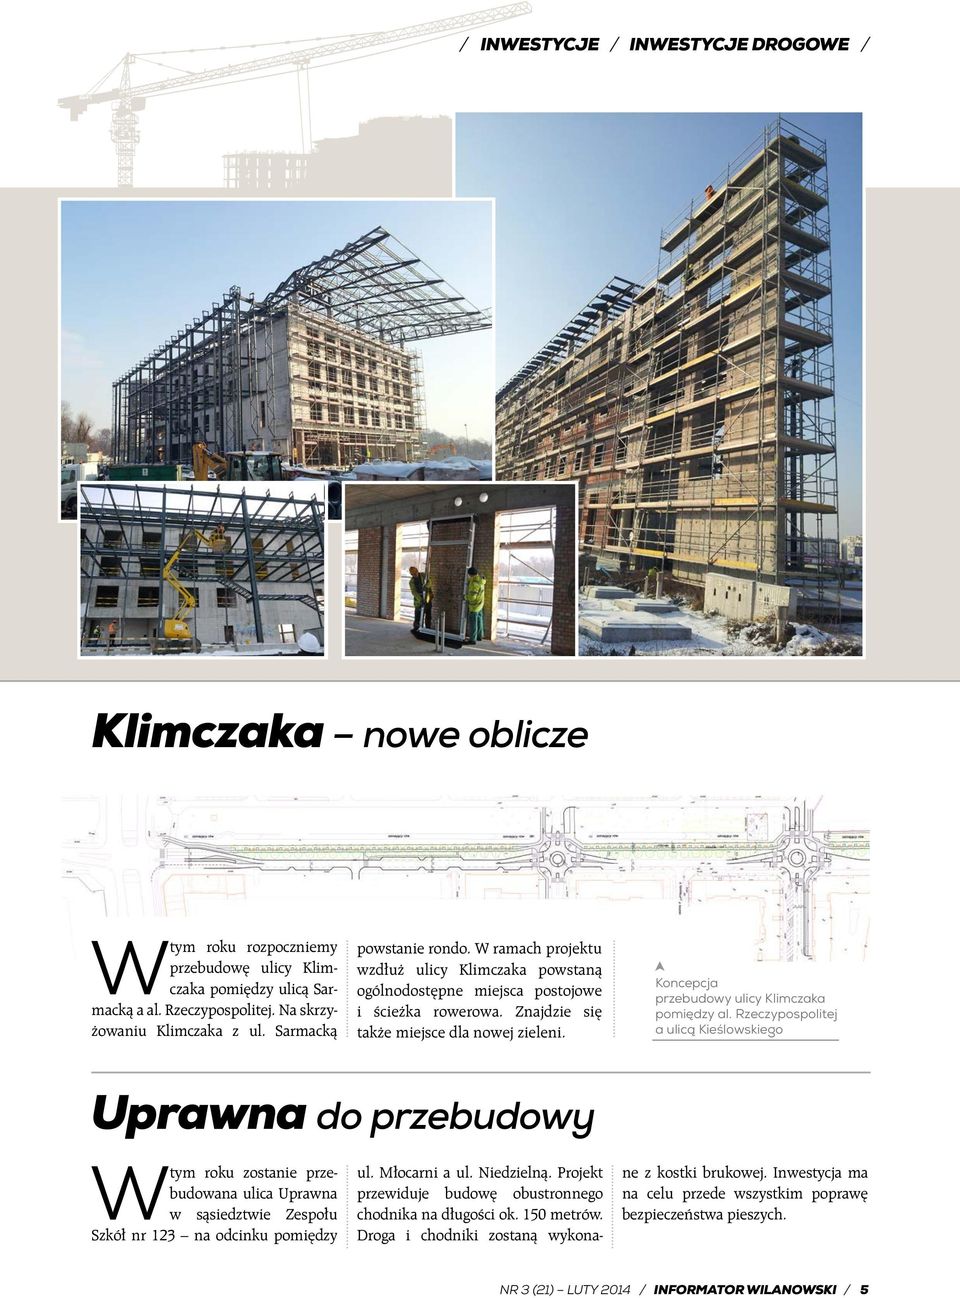 Koncepcja przebudowy ulicy Klimczaka pomiędzy al.